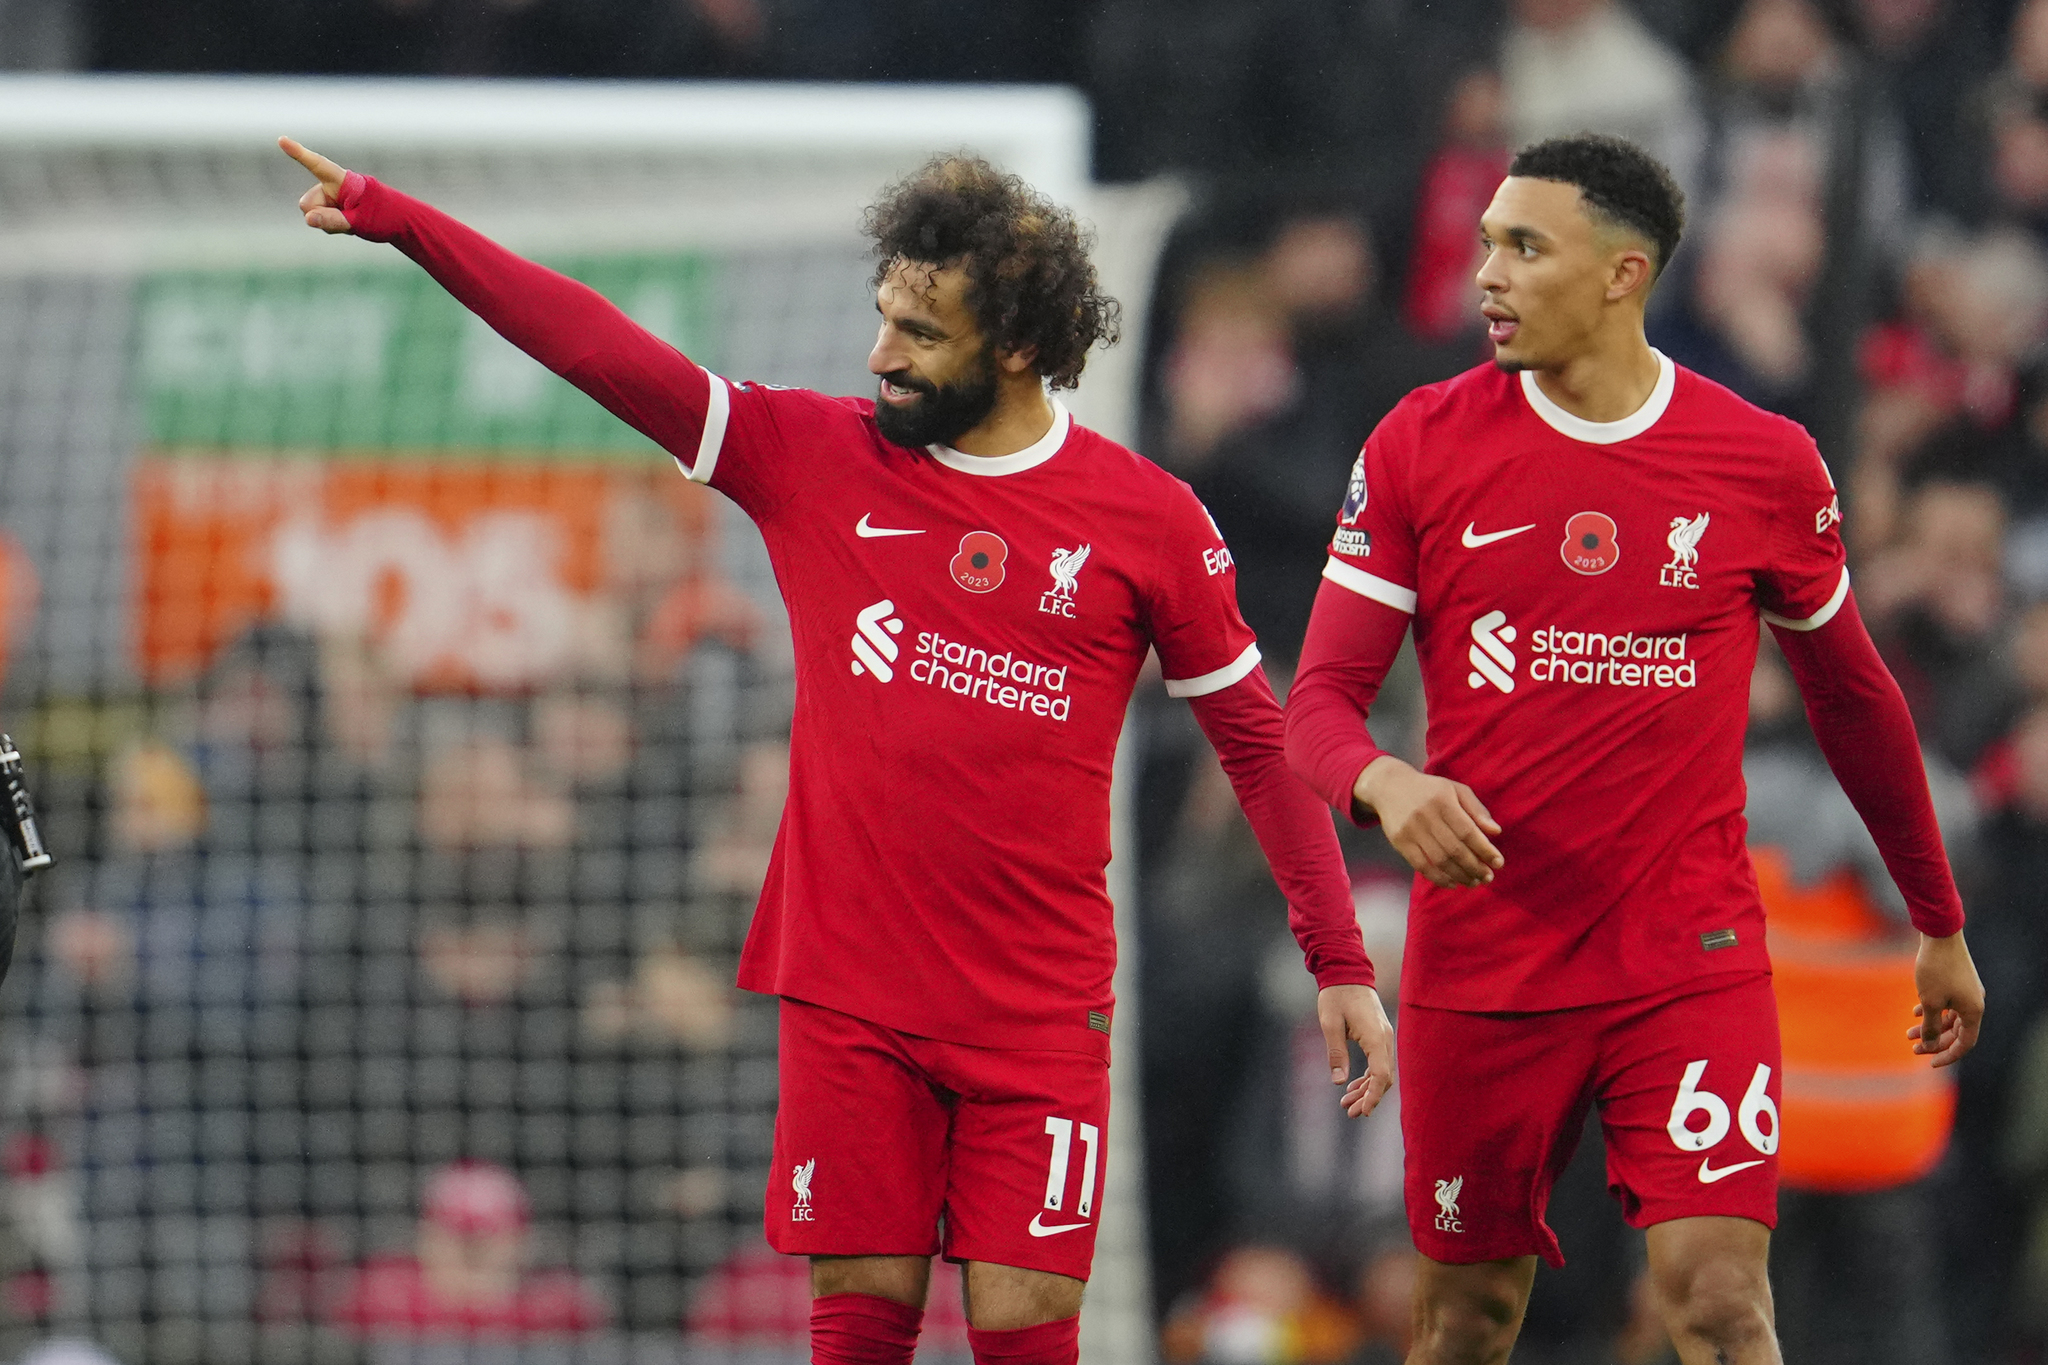 Liverpools Mohamed Salah, left, celebrates with teammate Trent Alexander-Arnold